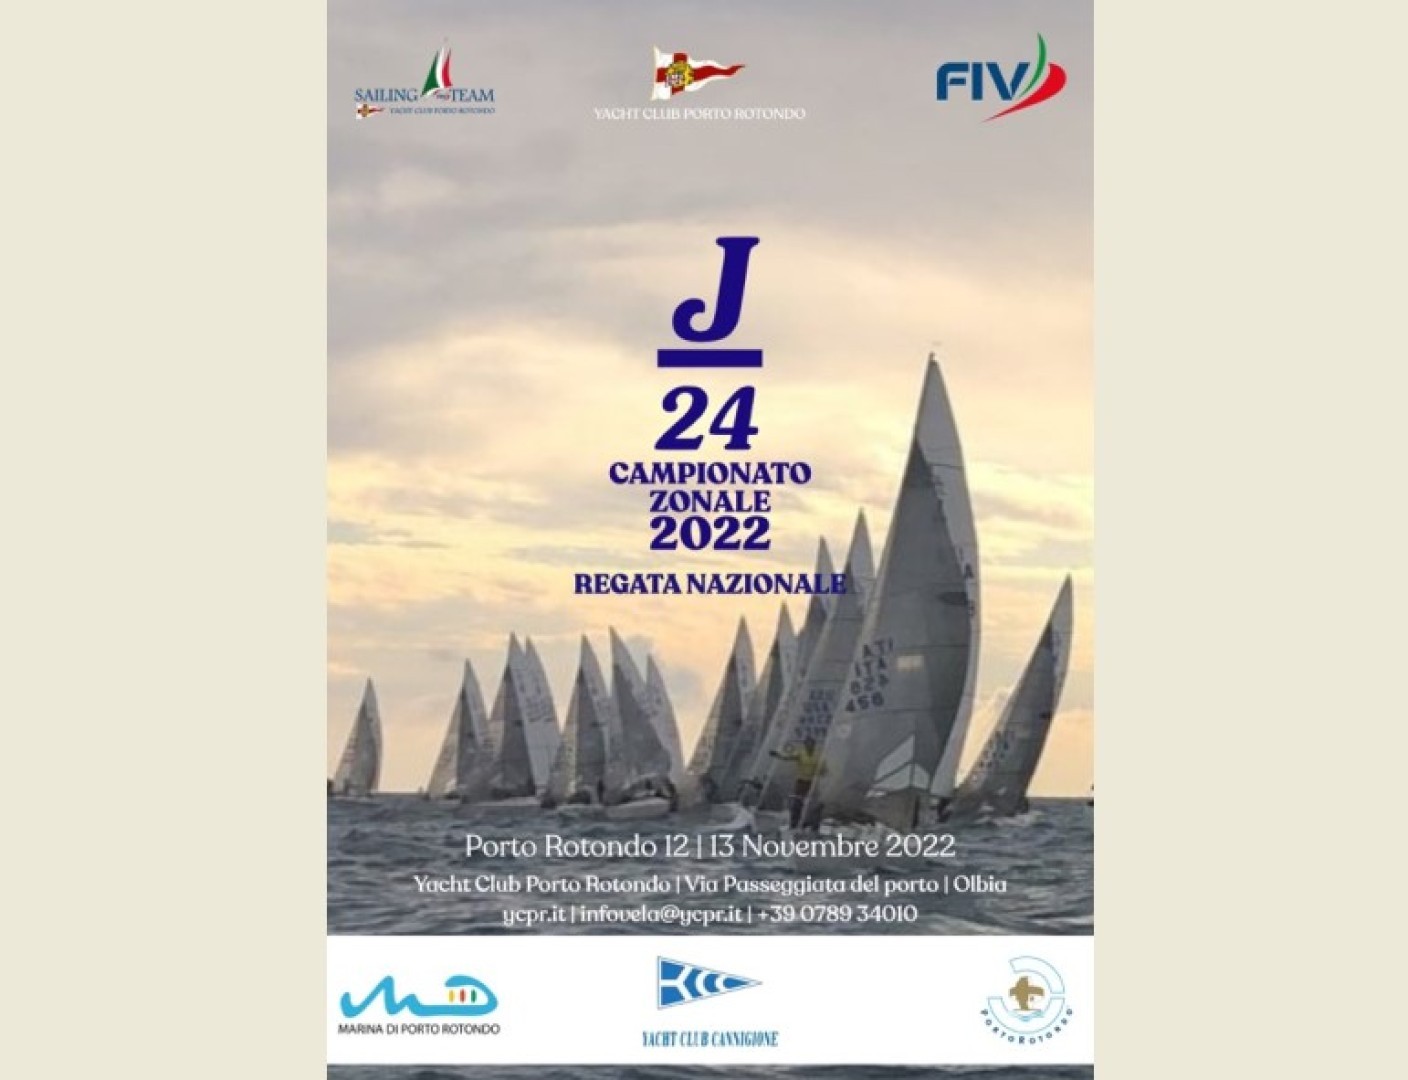 J24 Campionato Zonale - Regata Nazionale si terrà il 12 - 13 novembre